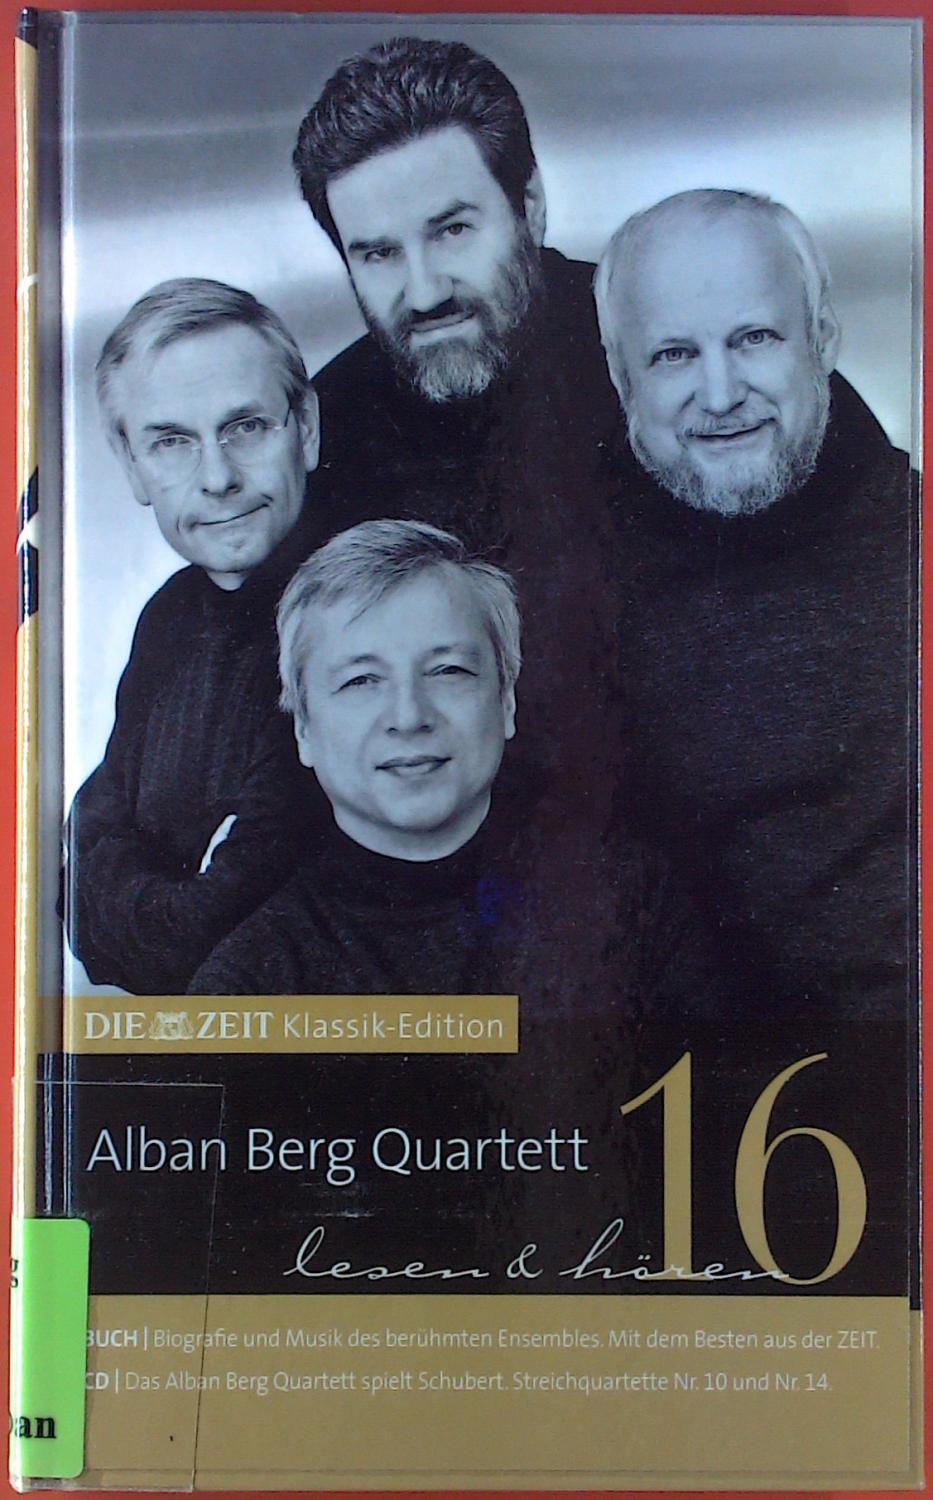 Die Zeit Klassik-Edition, BAND 16: Alban Berg Quartett, lesen & hören, mit CD - Hrsg. Zeitverlag Gerd Bucerius GmbH, Hamburg